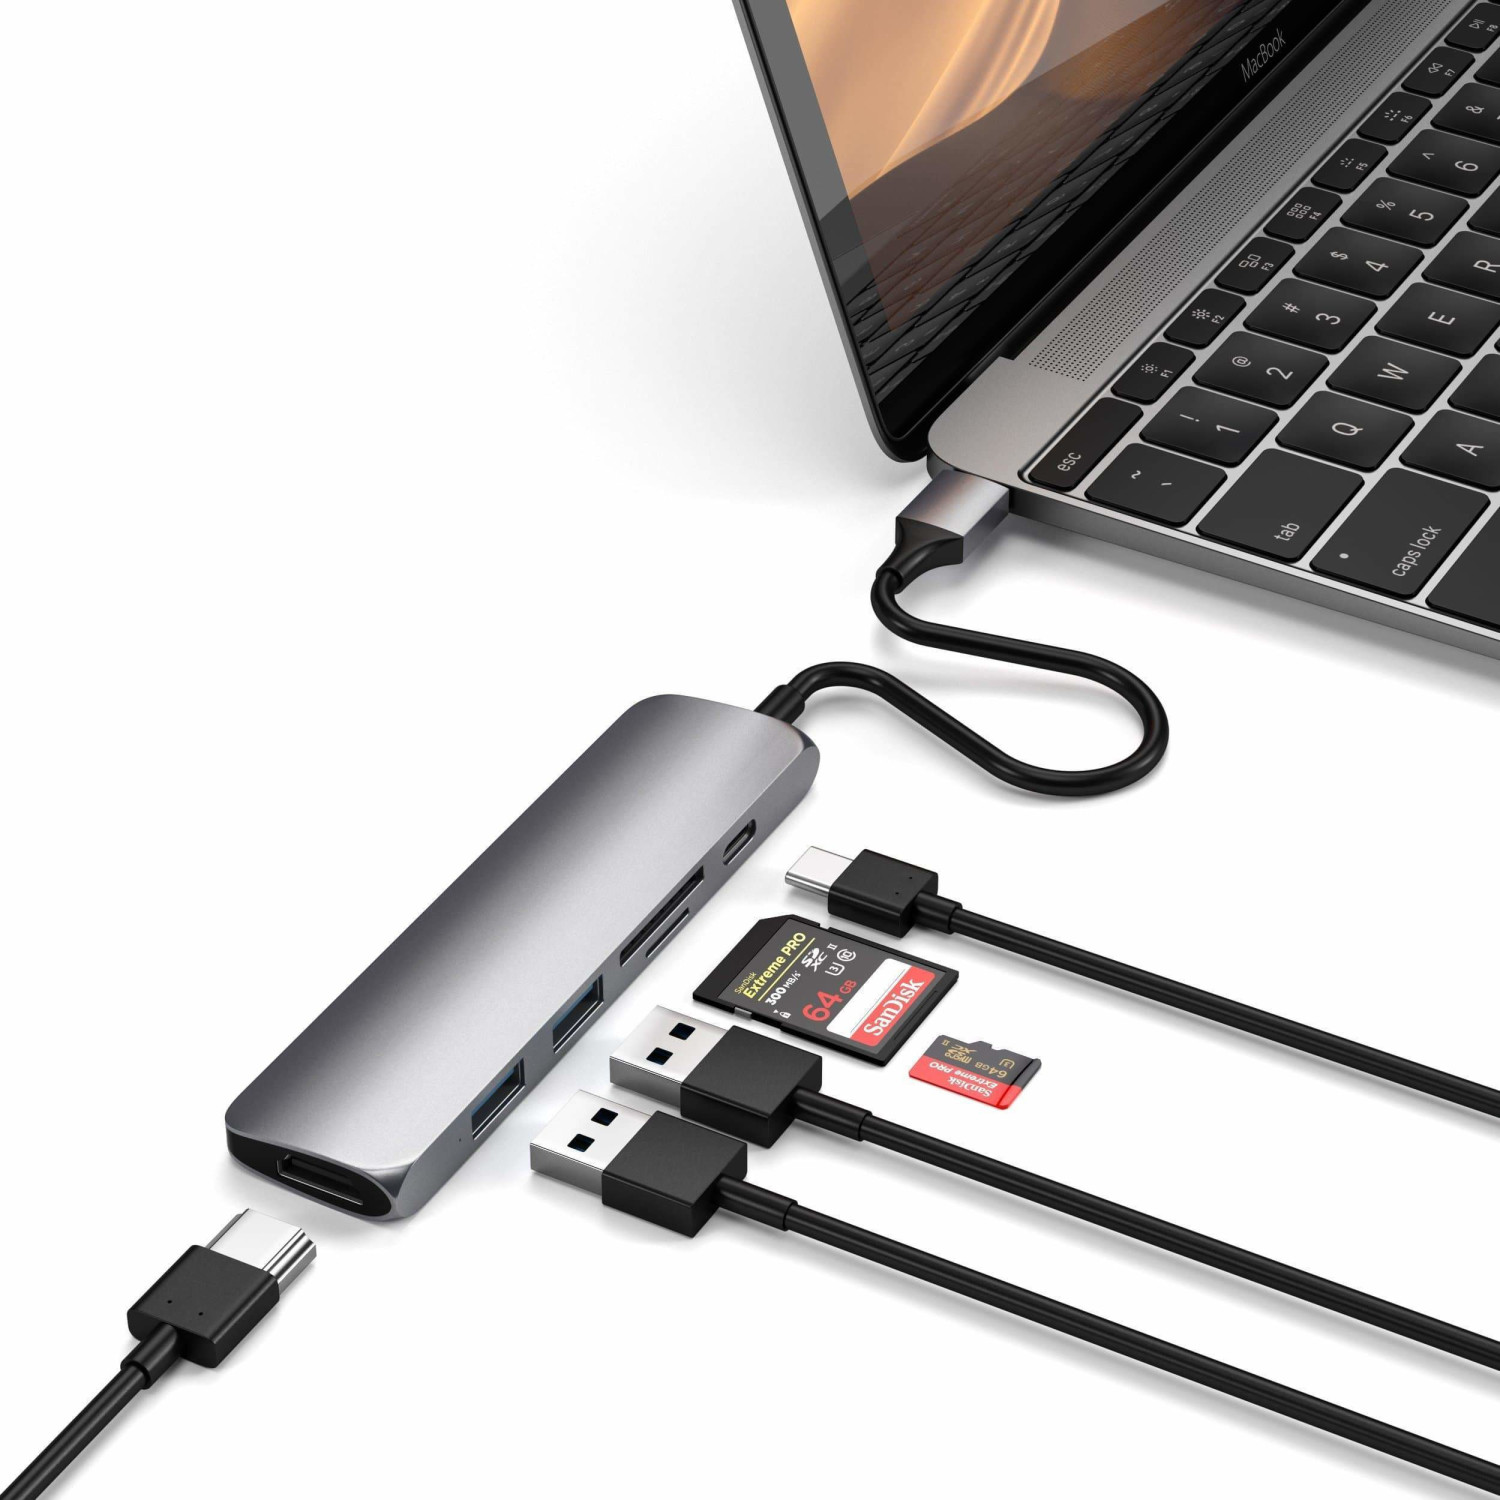 SATECHI Adaptateur Multiport Type - C Mince avec Port USB - C, HDMI 4K, USB  3.0 - pour Macbook Pro/Air M2/M1, iPad Pro/Air M2/M1, Mac Mini M2, iMac M1  (Gris Sidéral) 